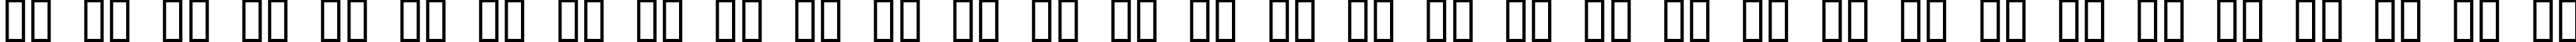 Пример написания русского алфавита шрифтом War Machine